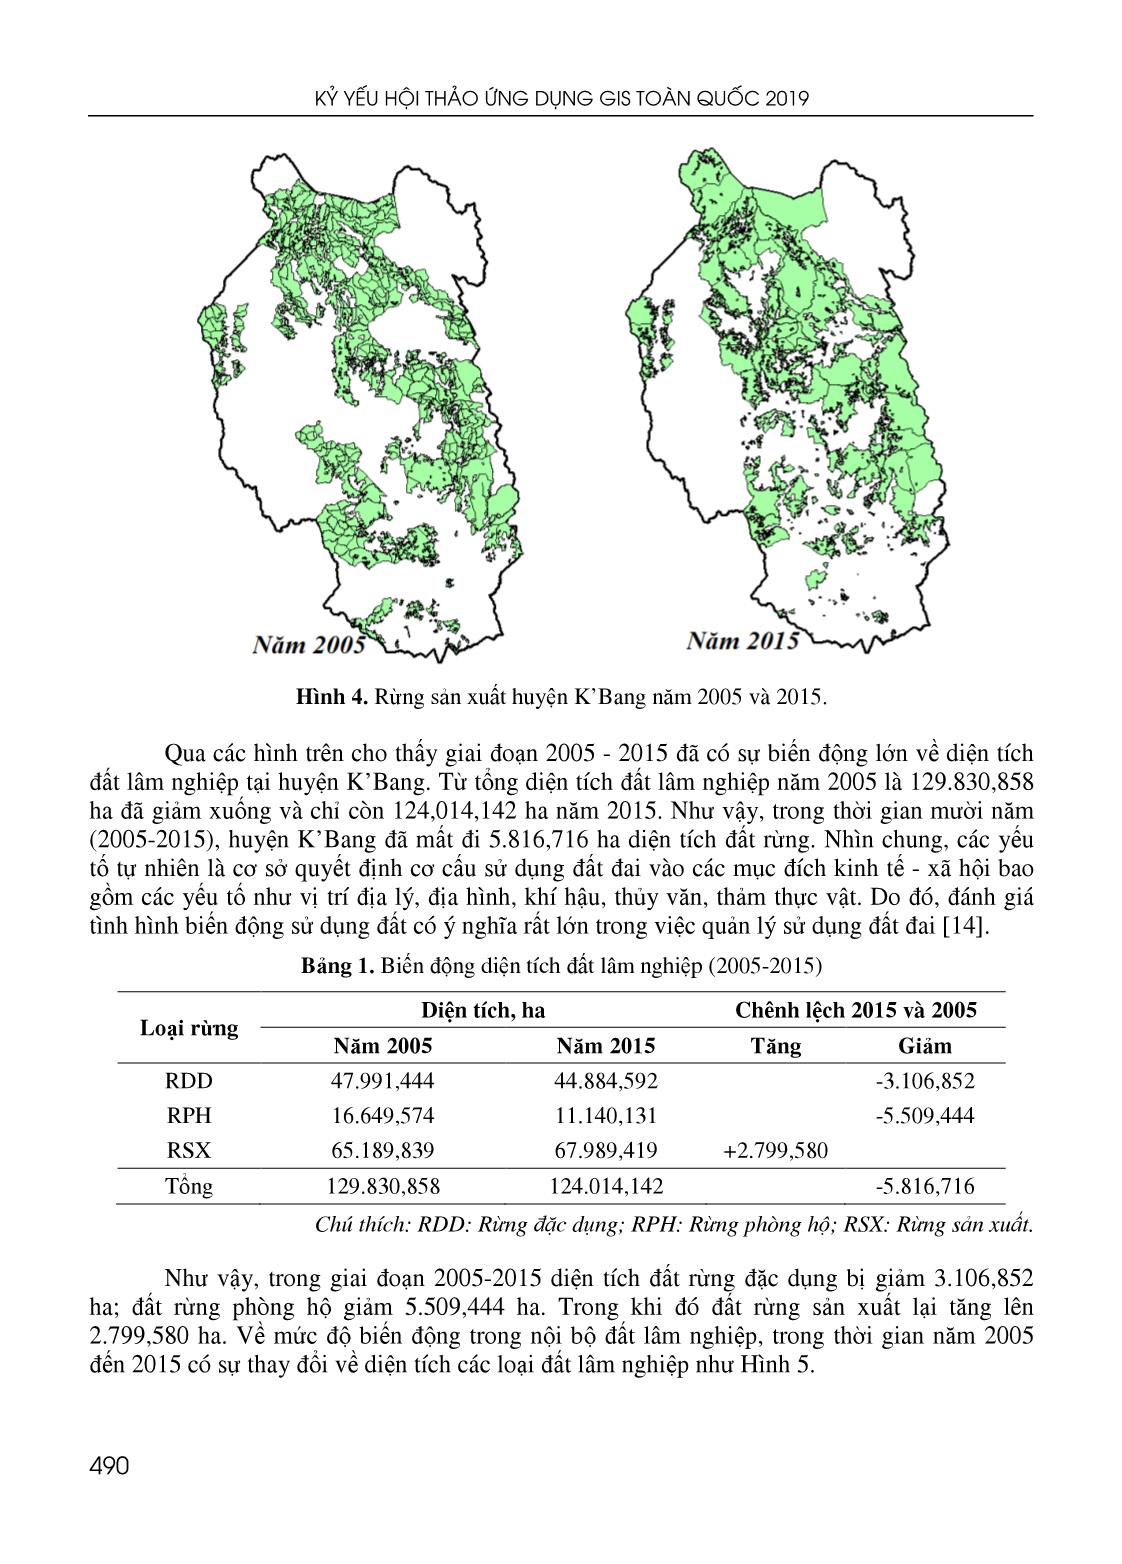 Ứng dụng GIS đánh giá biến động diện tích đất lâm nghiệp huyện Kbang, tỉnh Gia Lai và đề xuất giải pháp quản lý bền vững trang 5